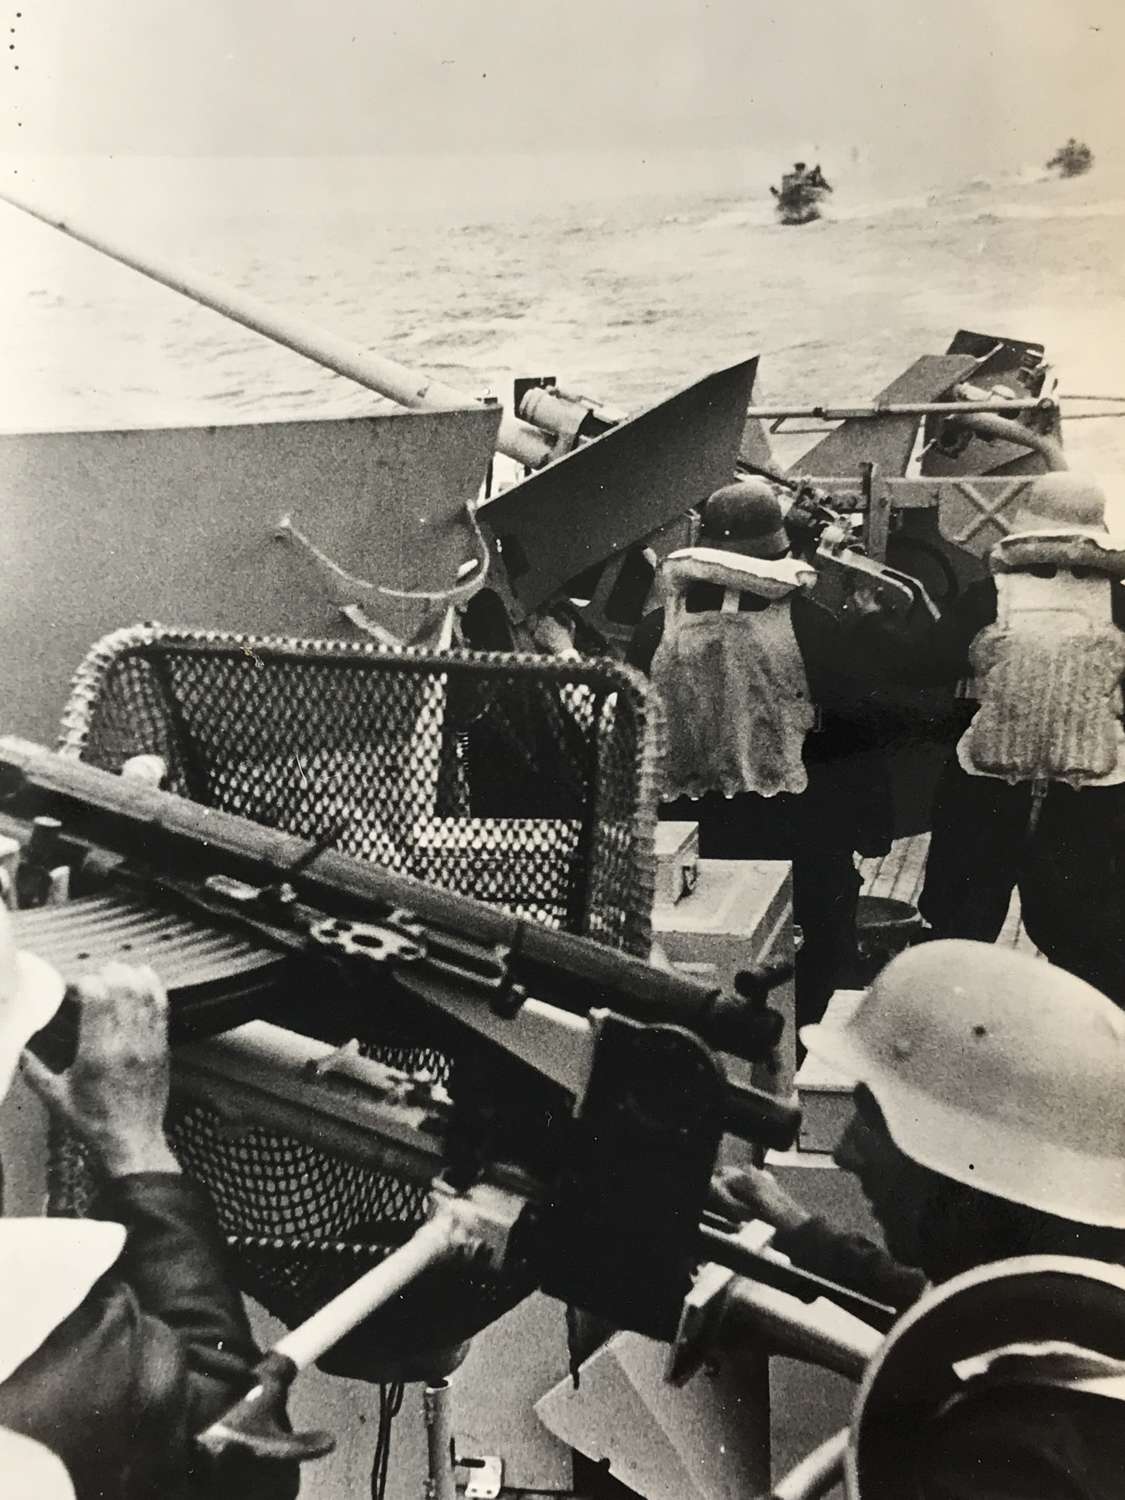 KM anti-aircraft gunners E boat photo dated 1944